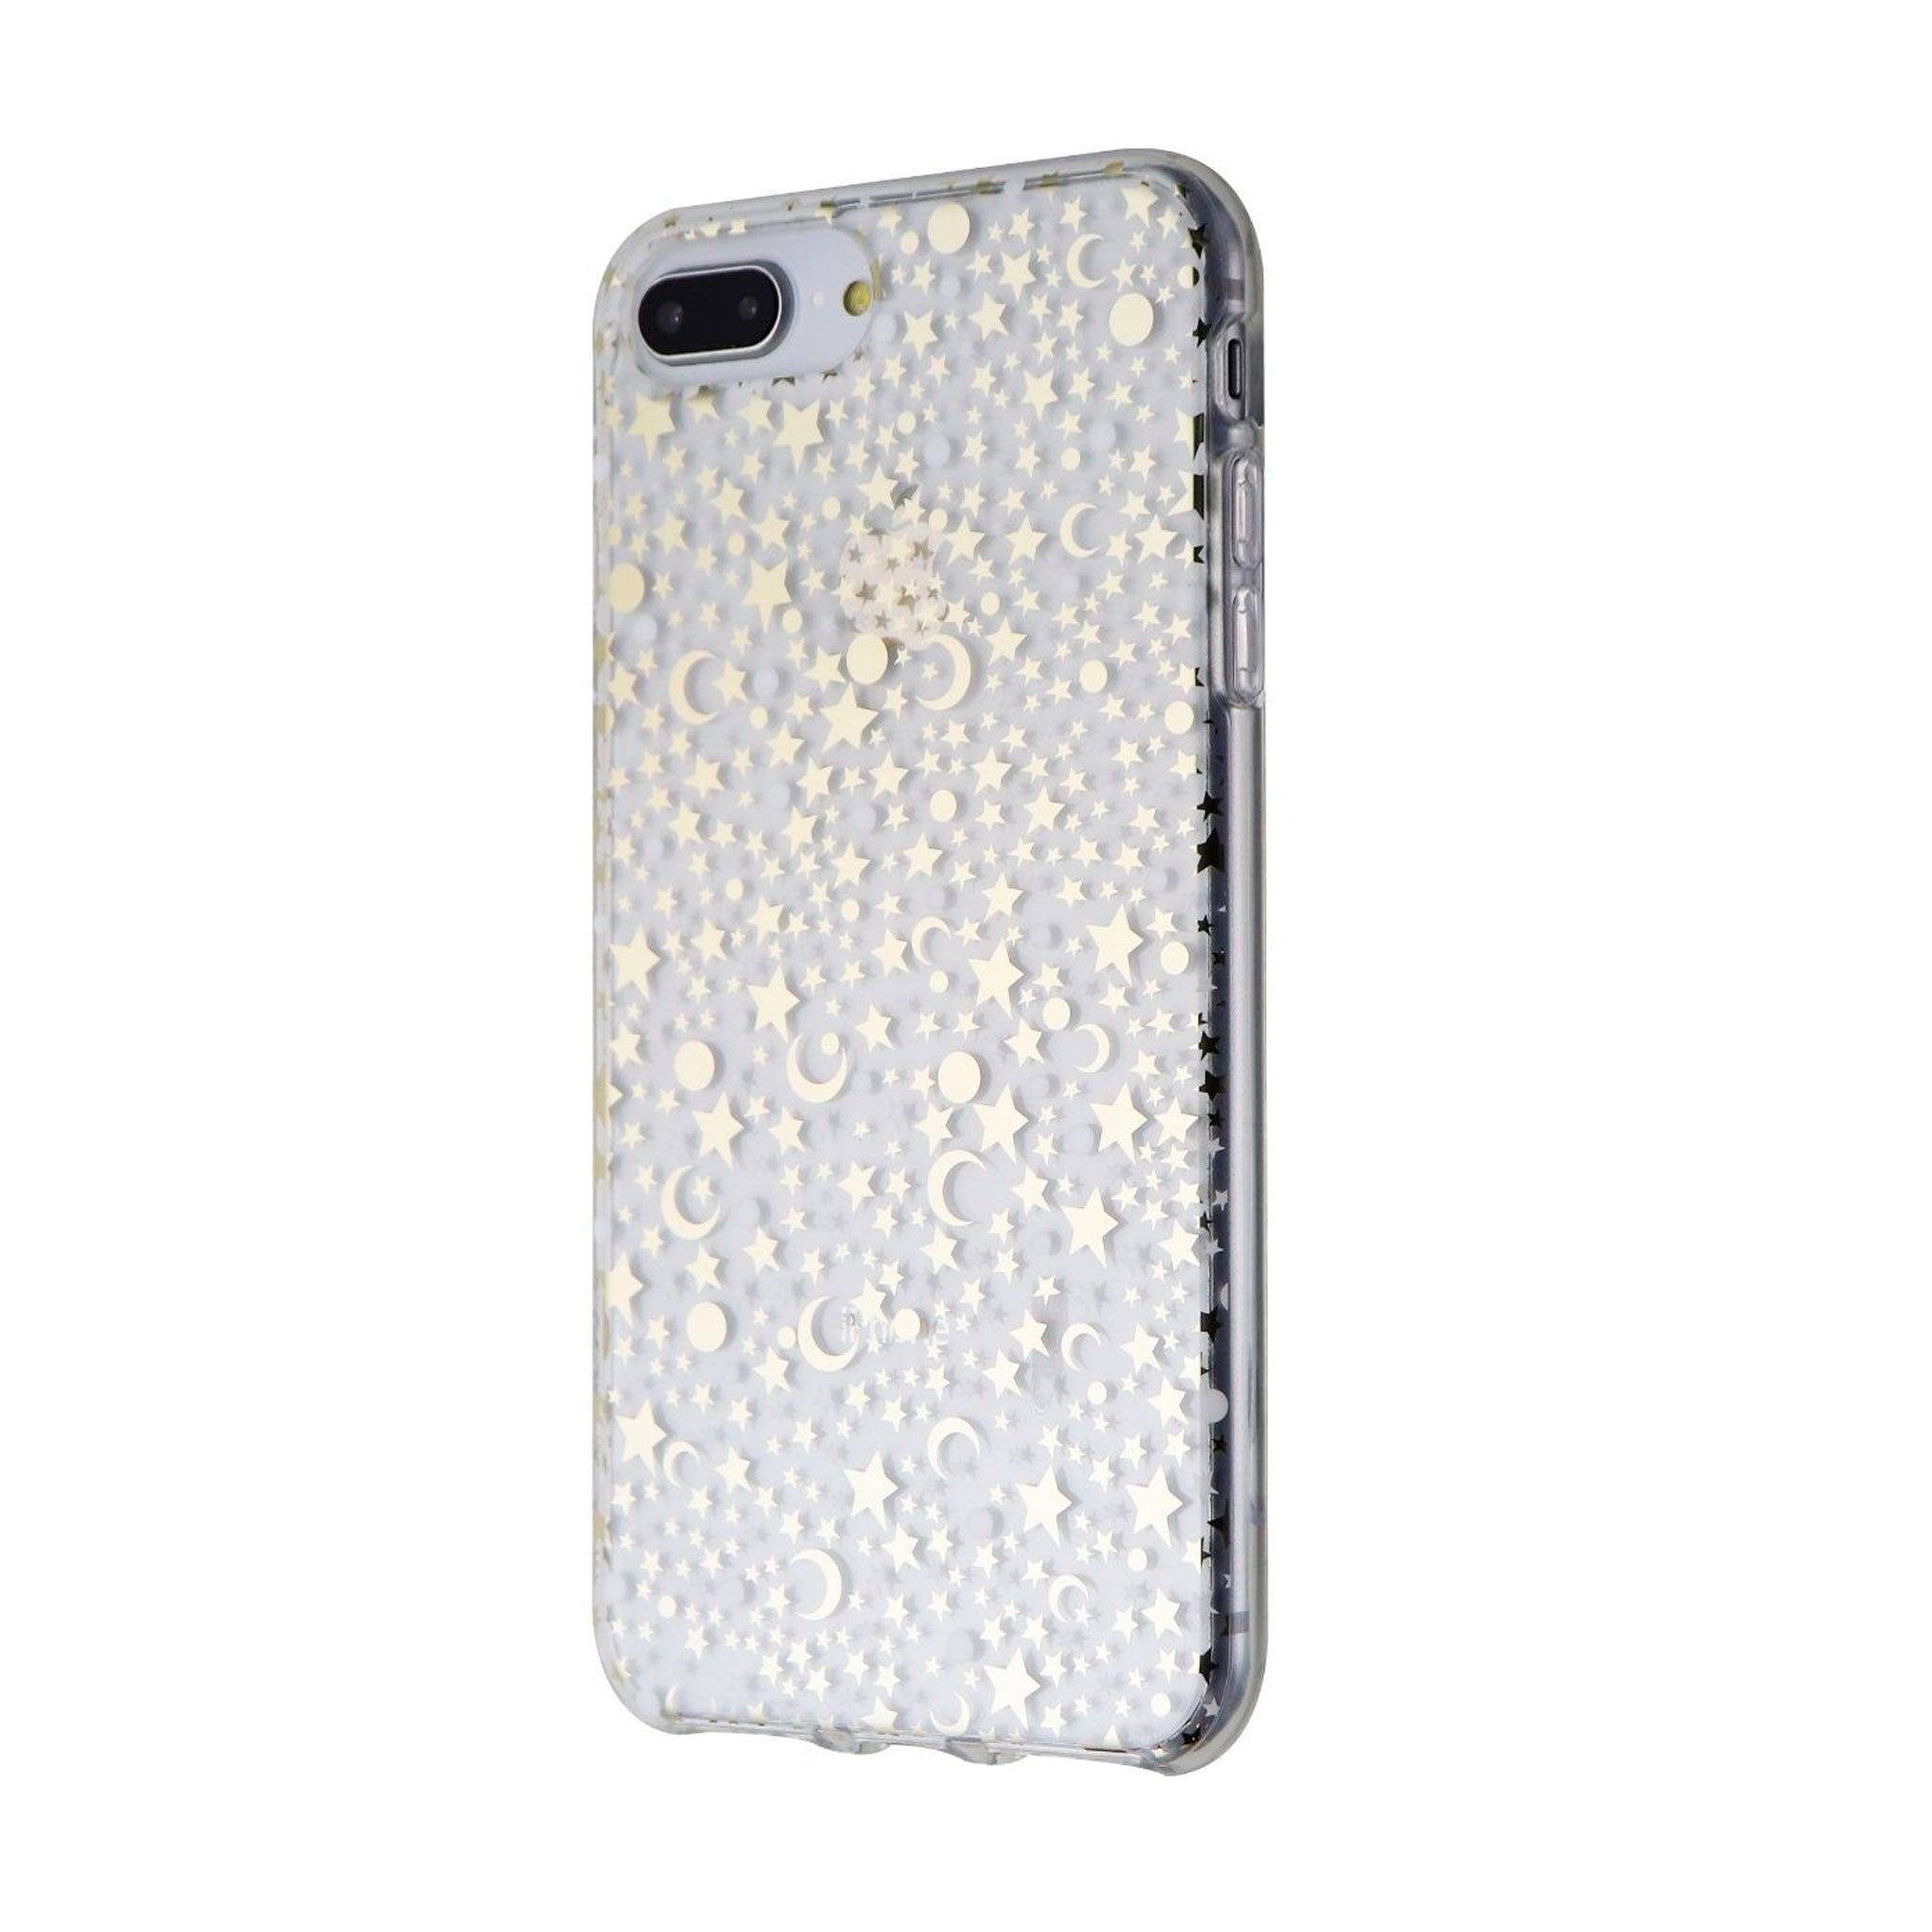 Incipio - Design Case For Apple iPhone 8 / 7 / 6s / 6 - Cosmic Metallic